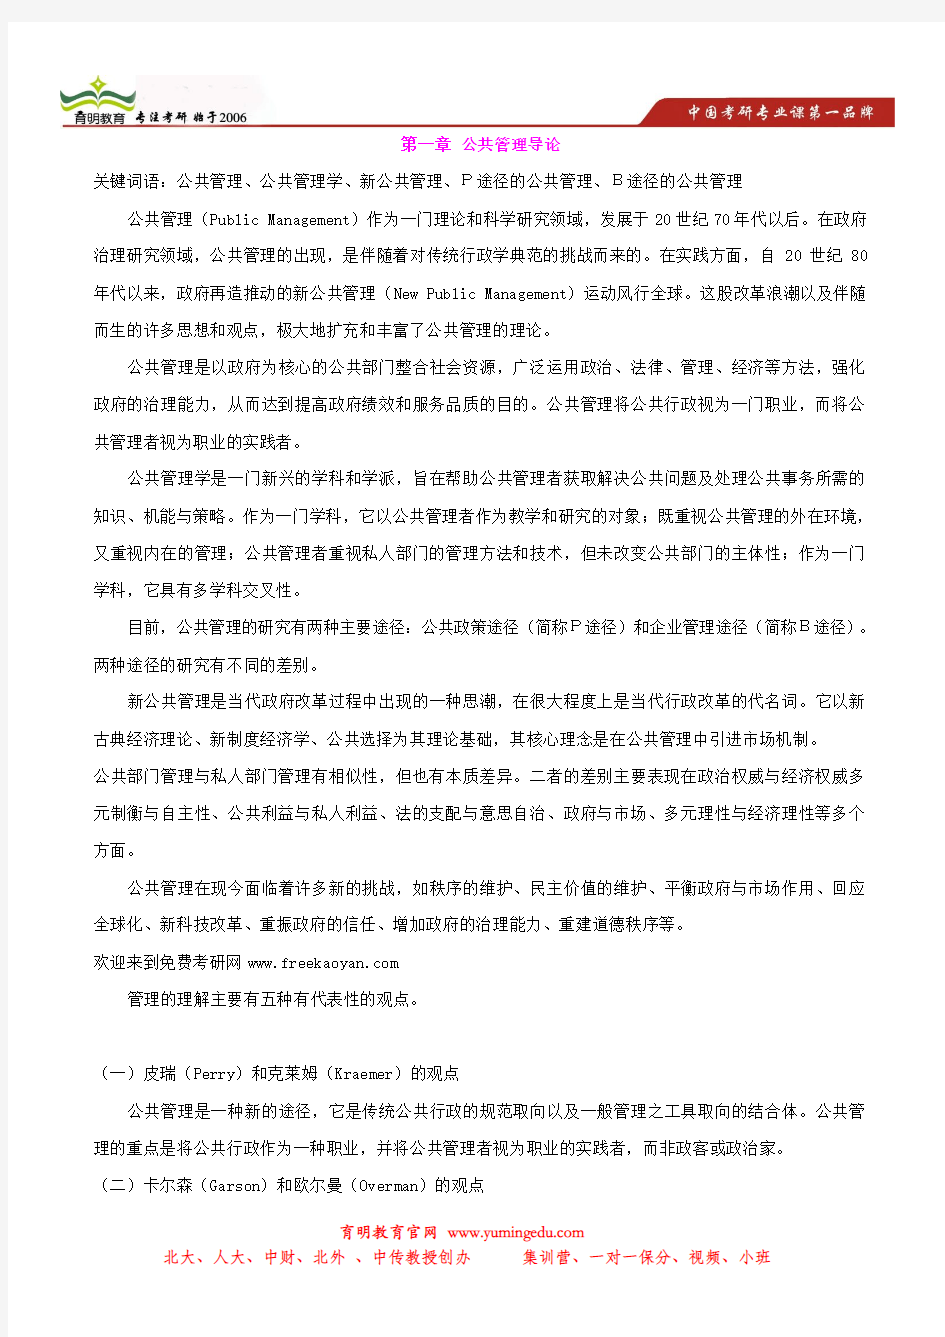 张成福 公共管理学状元笔记-中国人民大学行政管理考研